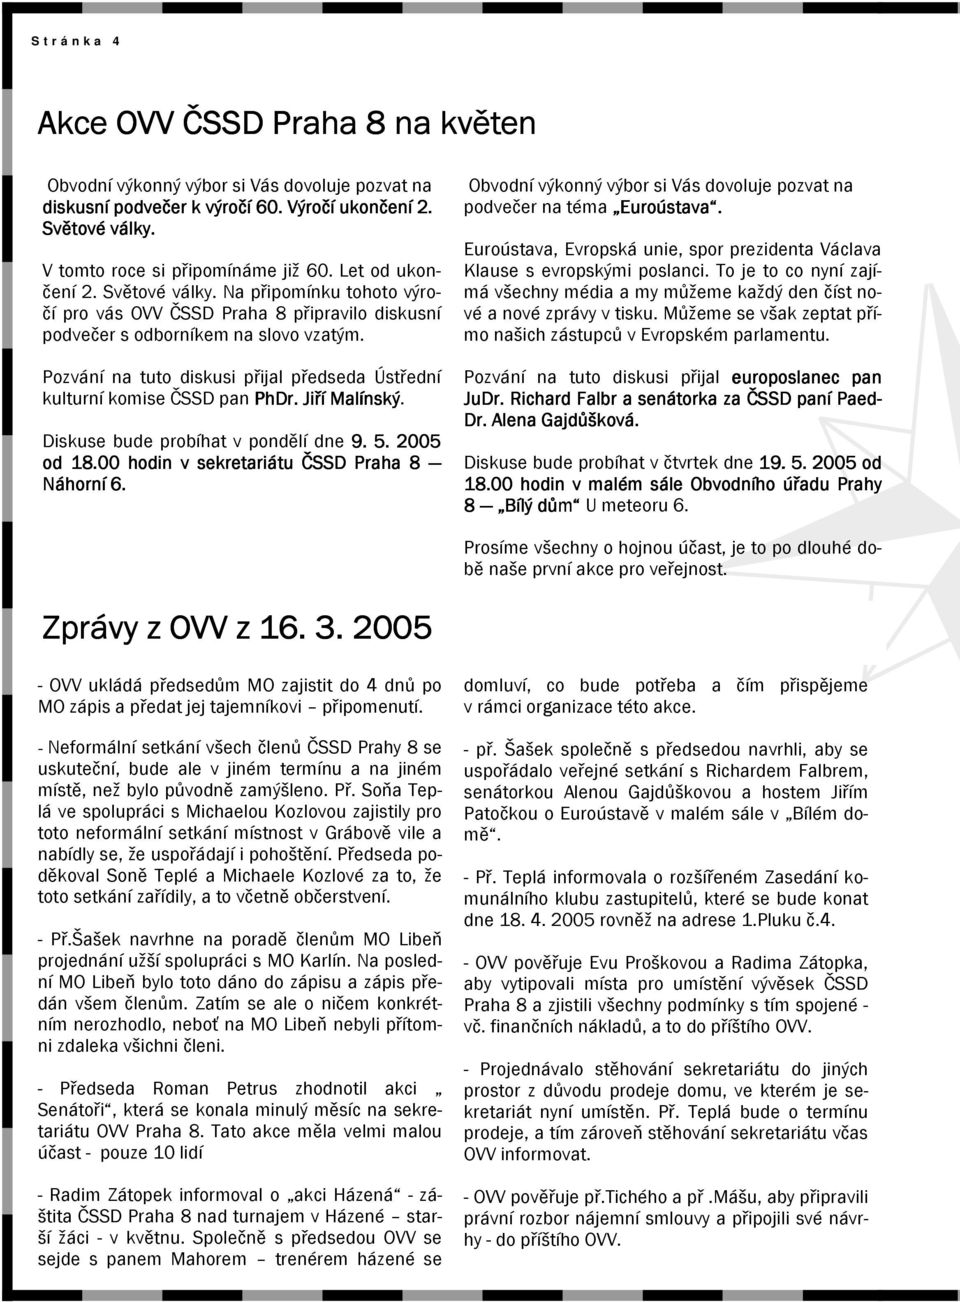 Pozvání na tuto diskusi přijal předseda Ústřední kulturní komise ČSSD pan PhDr. Jiří Malínský. Diskuse bude probíhat v pondělí dne 9. 5. 2005 od 18.00 hodin v sekretariátu ČSSD Praha 8 Náhorní 6.